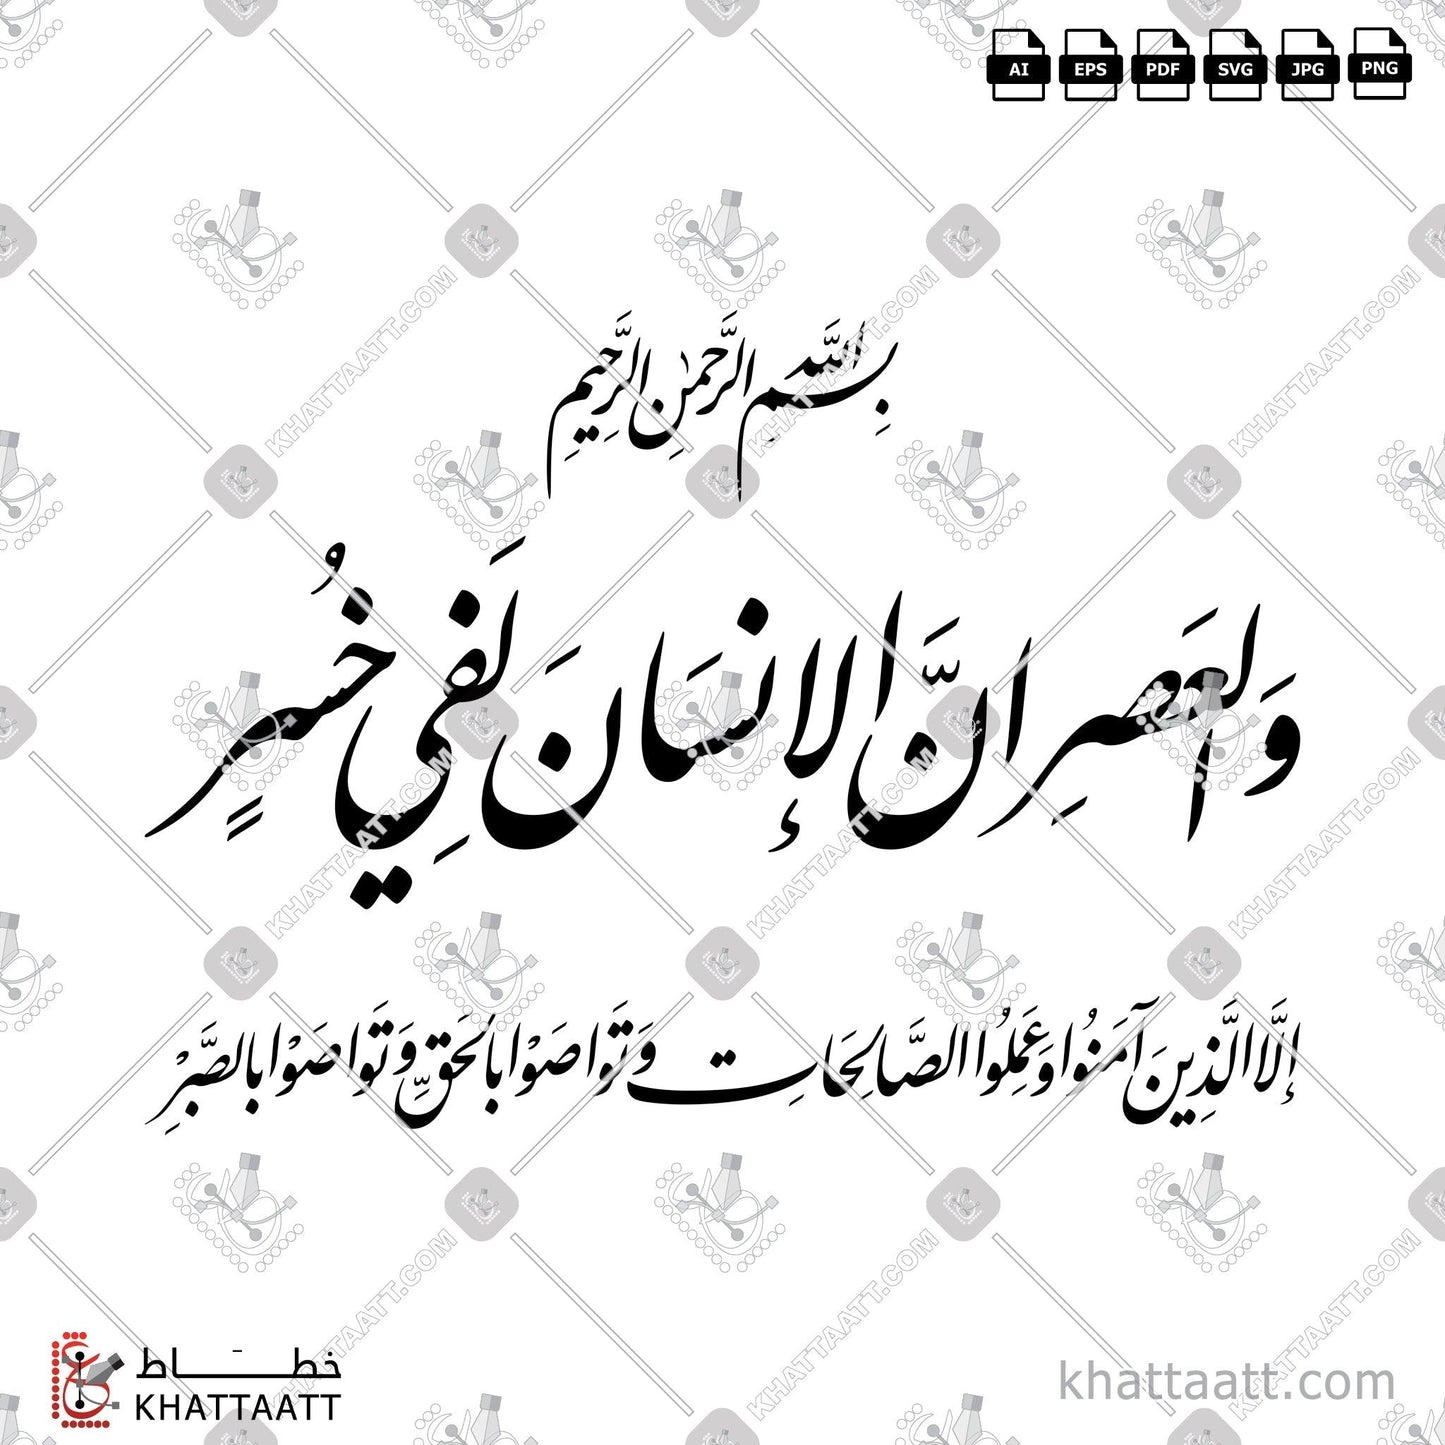 Digital Arabic calligraphy vector of Surat Al-Asr - سورة العصر in Farsi - الخط الفارسي